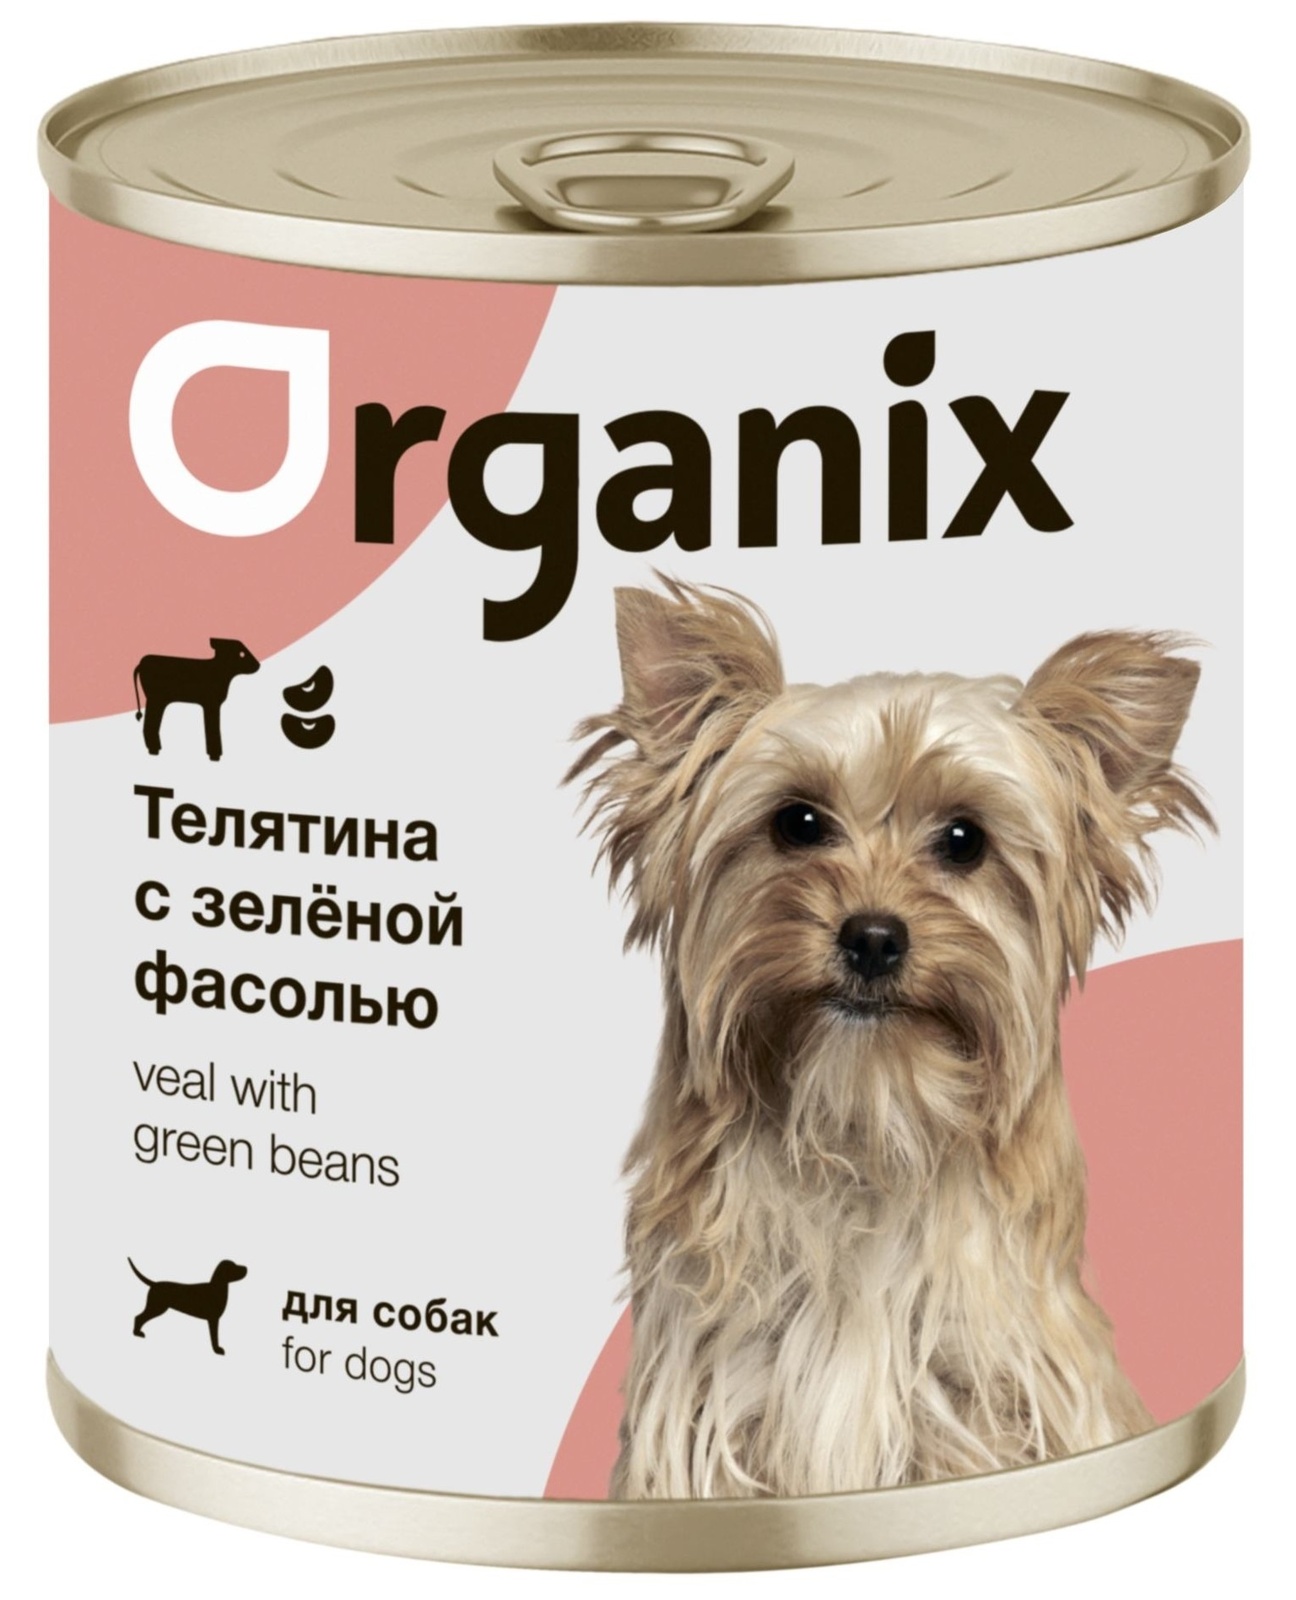 Organix консервы Organix консервы для собак Телятина с зеленой фасолью (100 г) organix консервы organix консервы для собак индейка с сердечками и шпинатом 100 г